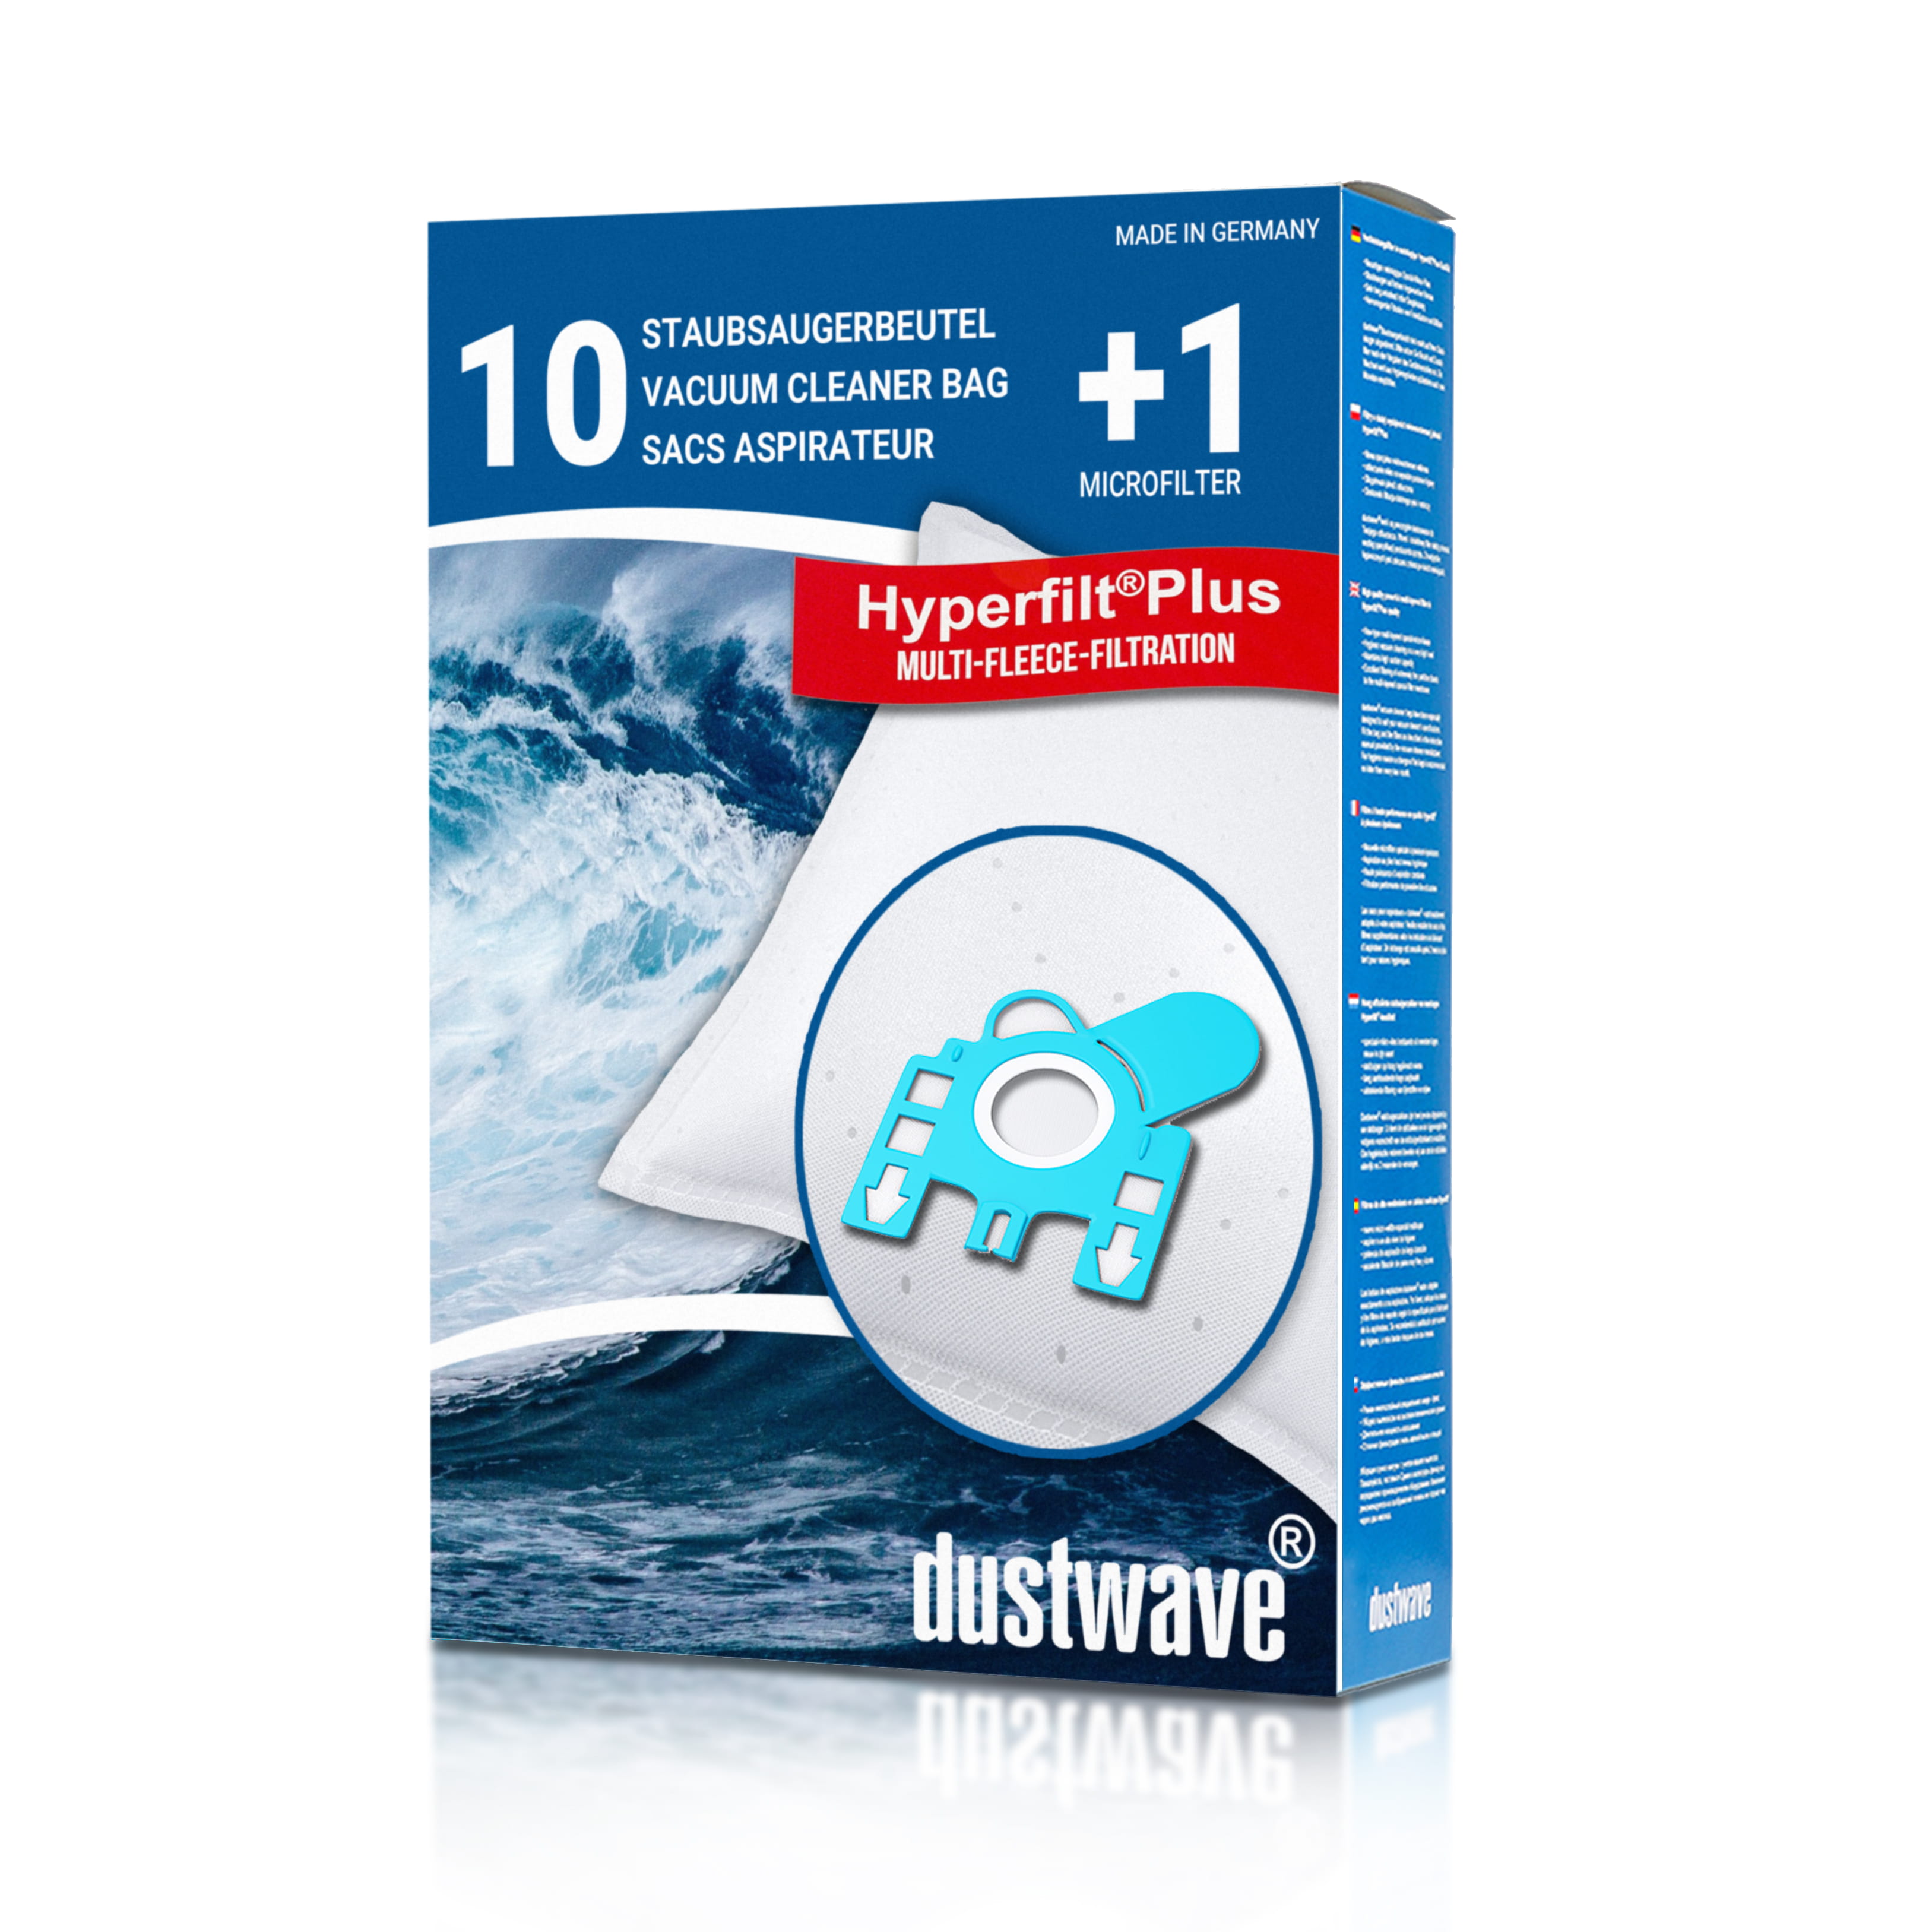 Dustwave® 10 Staubsaugerbeutel für Hoover TFB2011 013 FreeMotion - hocheffizient, mehrlagiges Mikrovlies mit Hygieneverschluss - Made in Germany